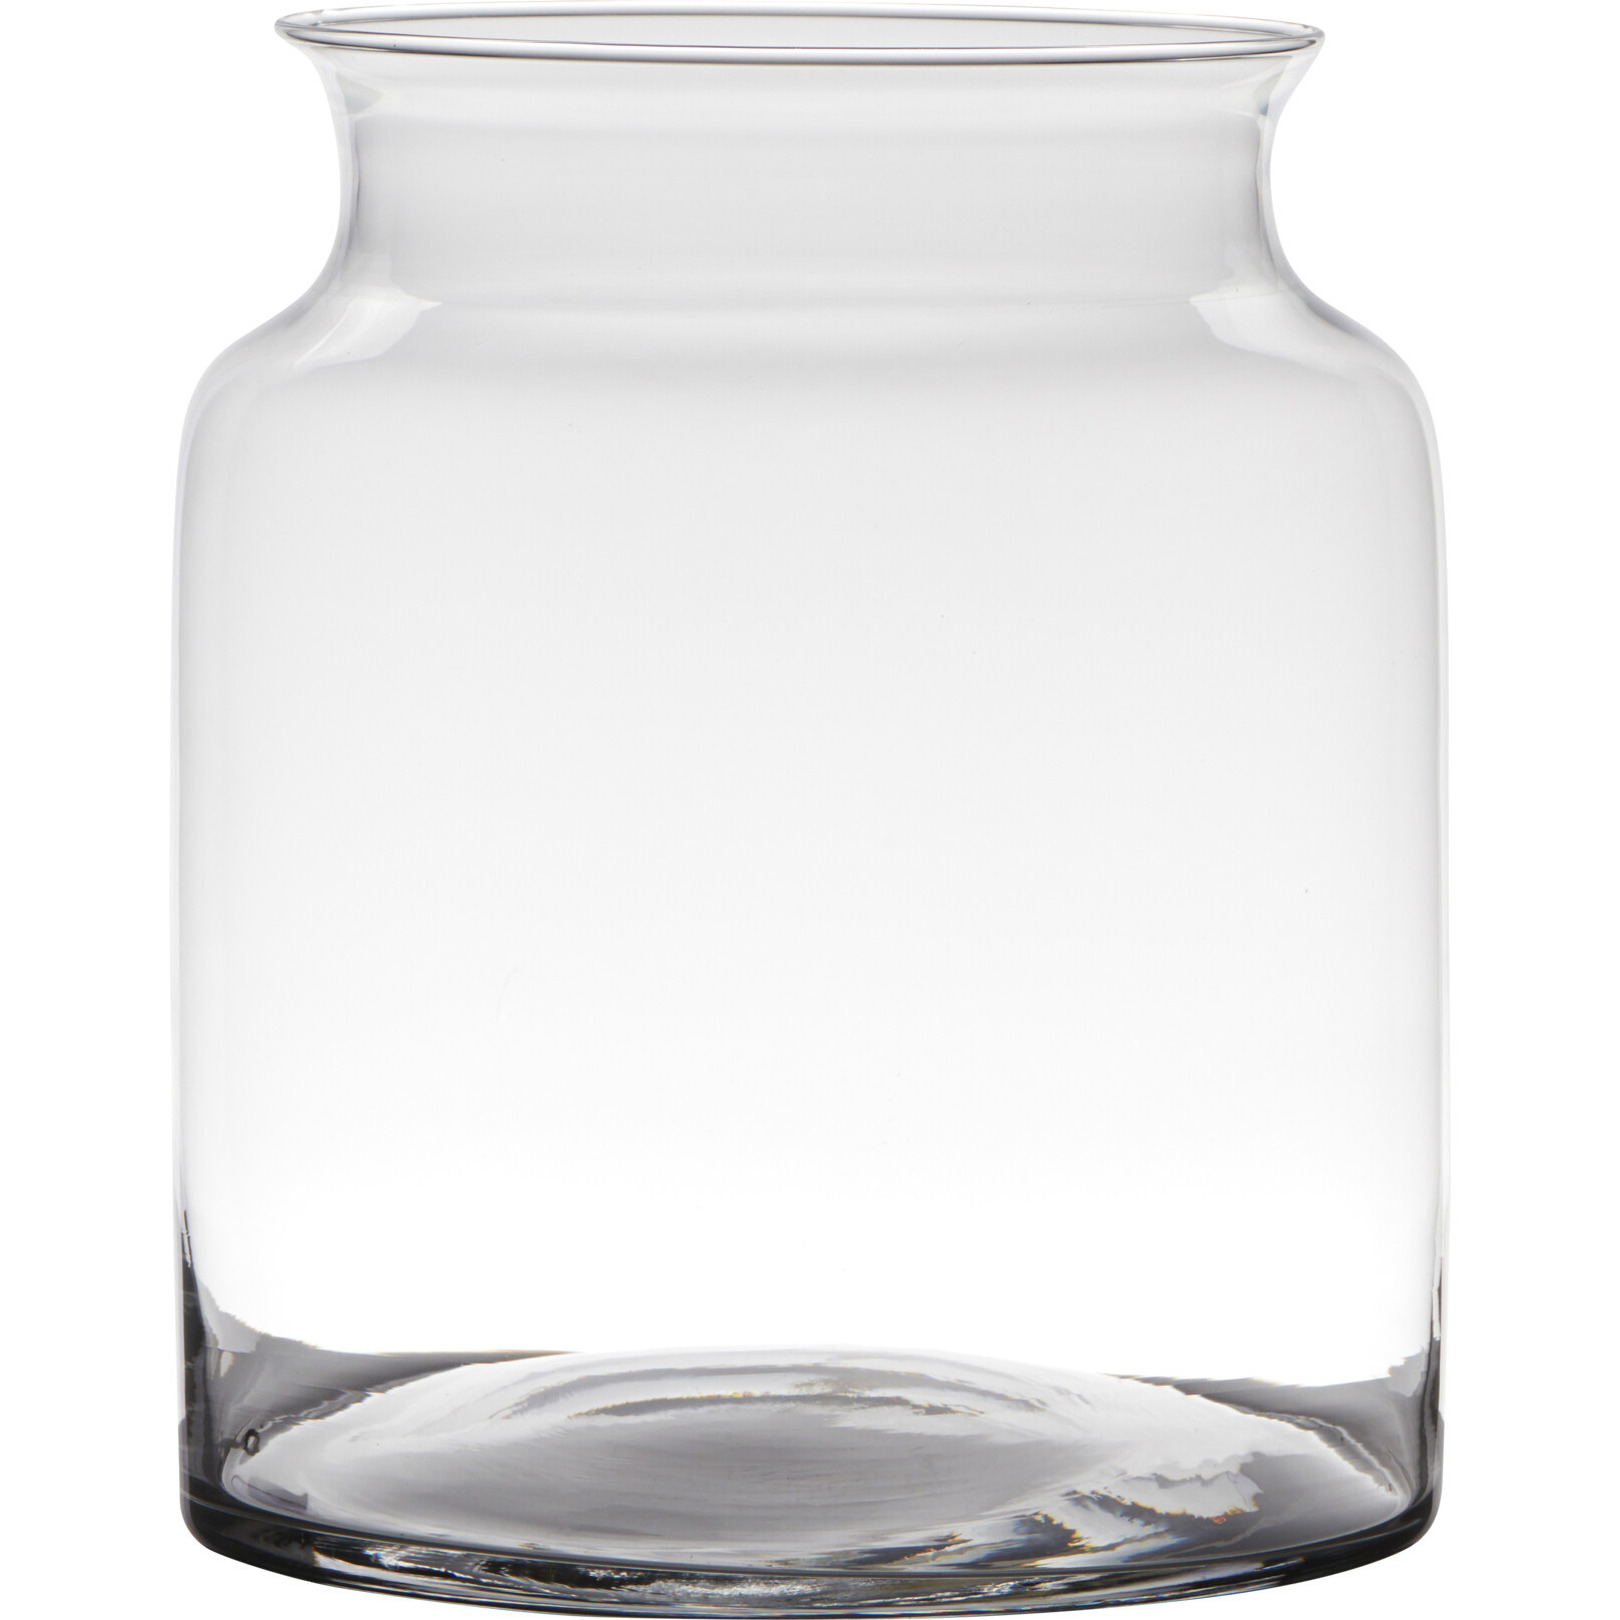 Hakbijl Glass Transparante luxe stijlvolle vaas/vazen van glas 27 x 22 cm -